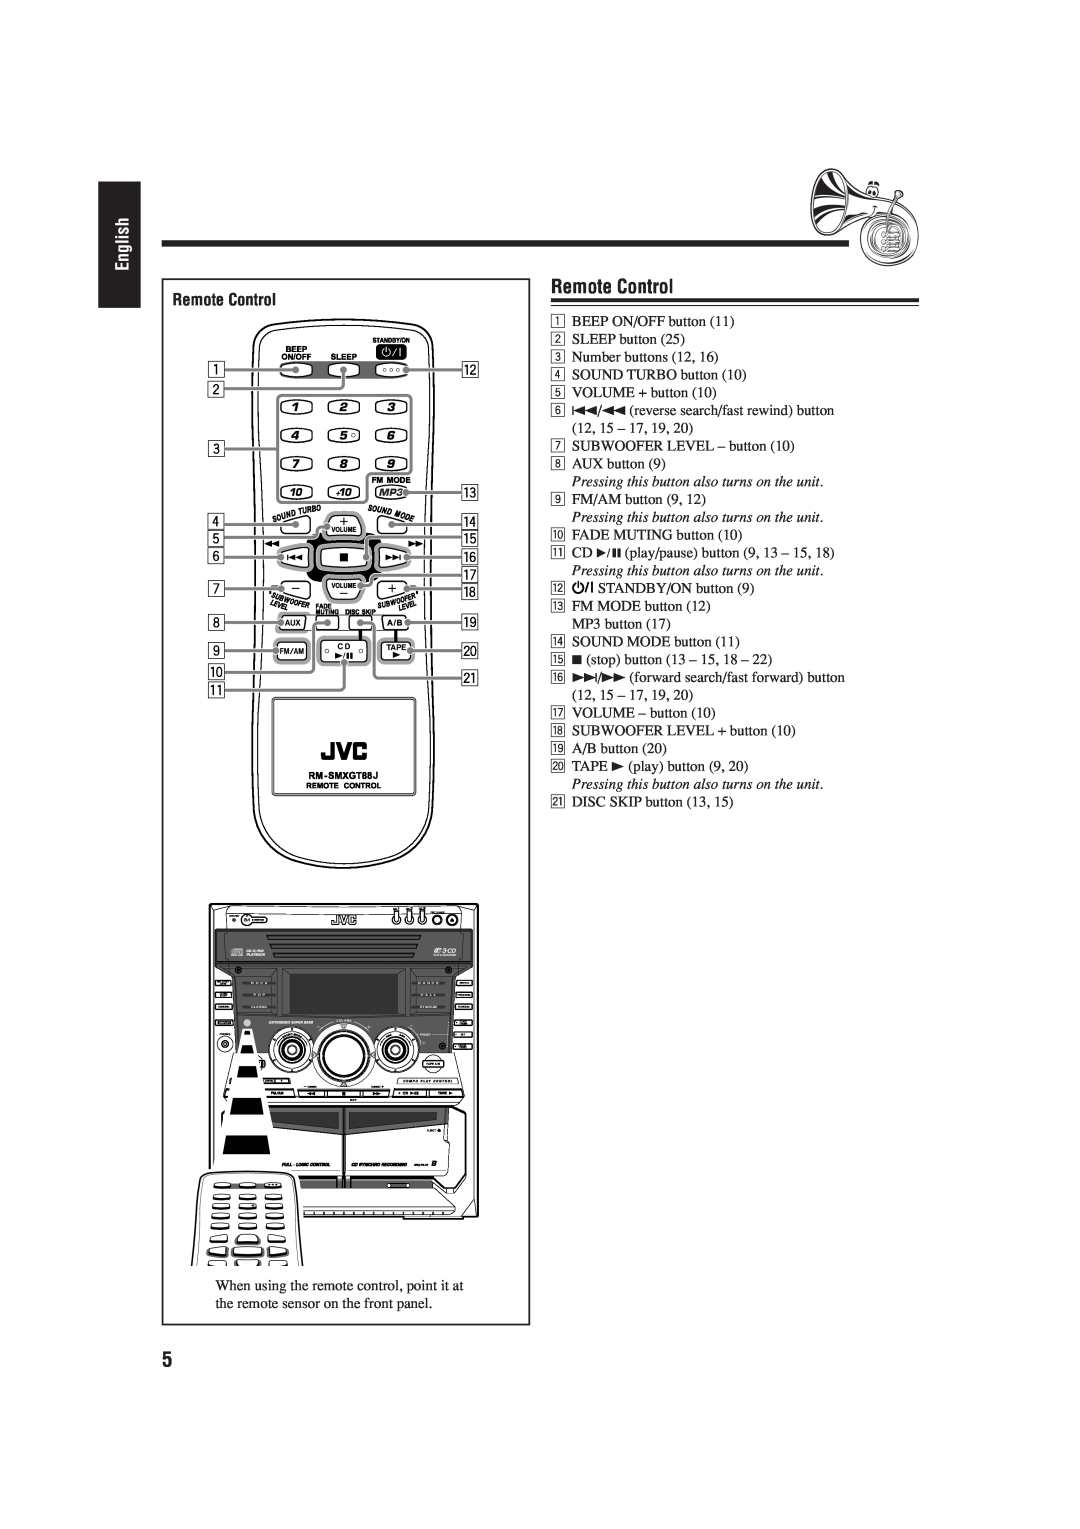 JVC MX-GT88 manual Remote Control, English, 1 2 3 4 5 6 7 8 9 p q, r t y u o 